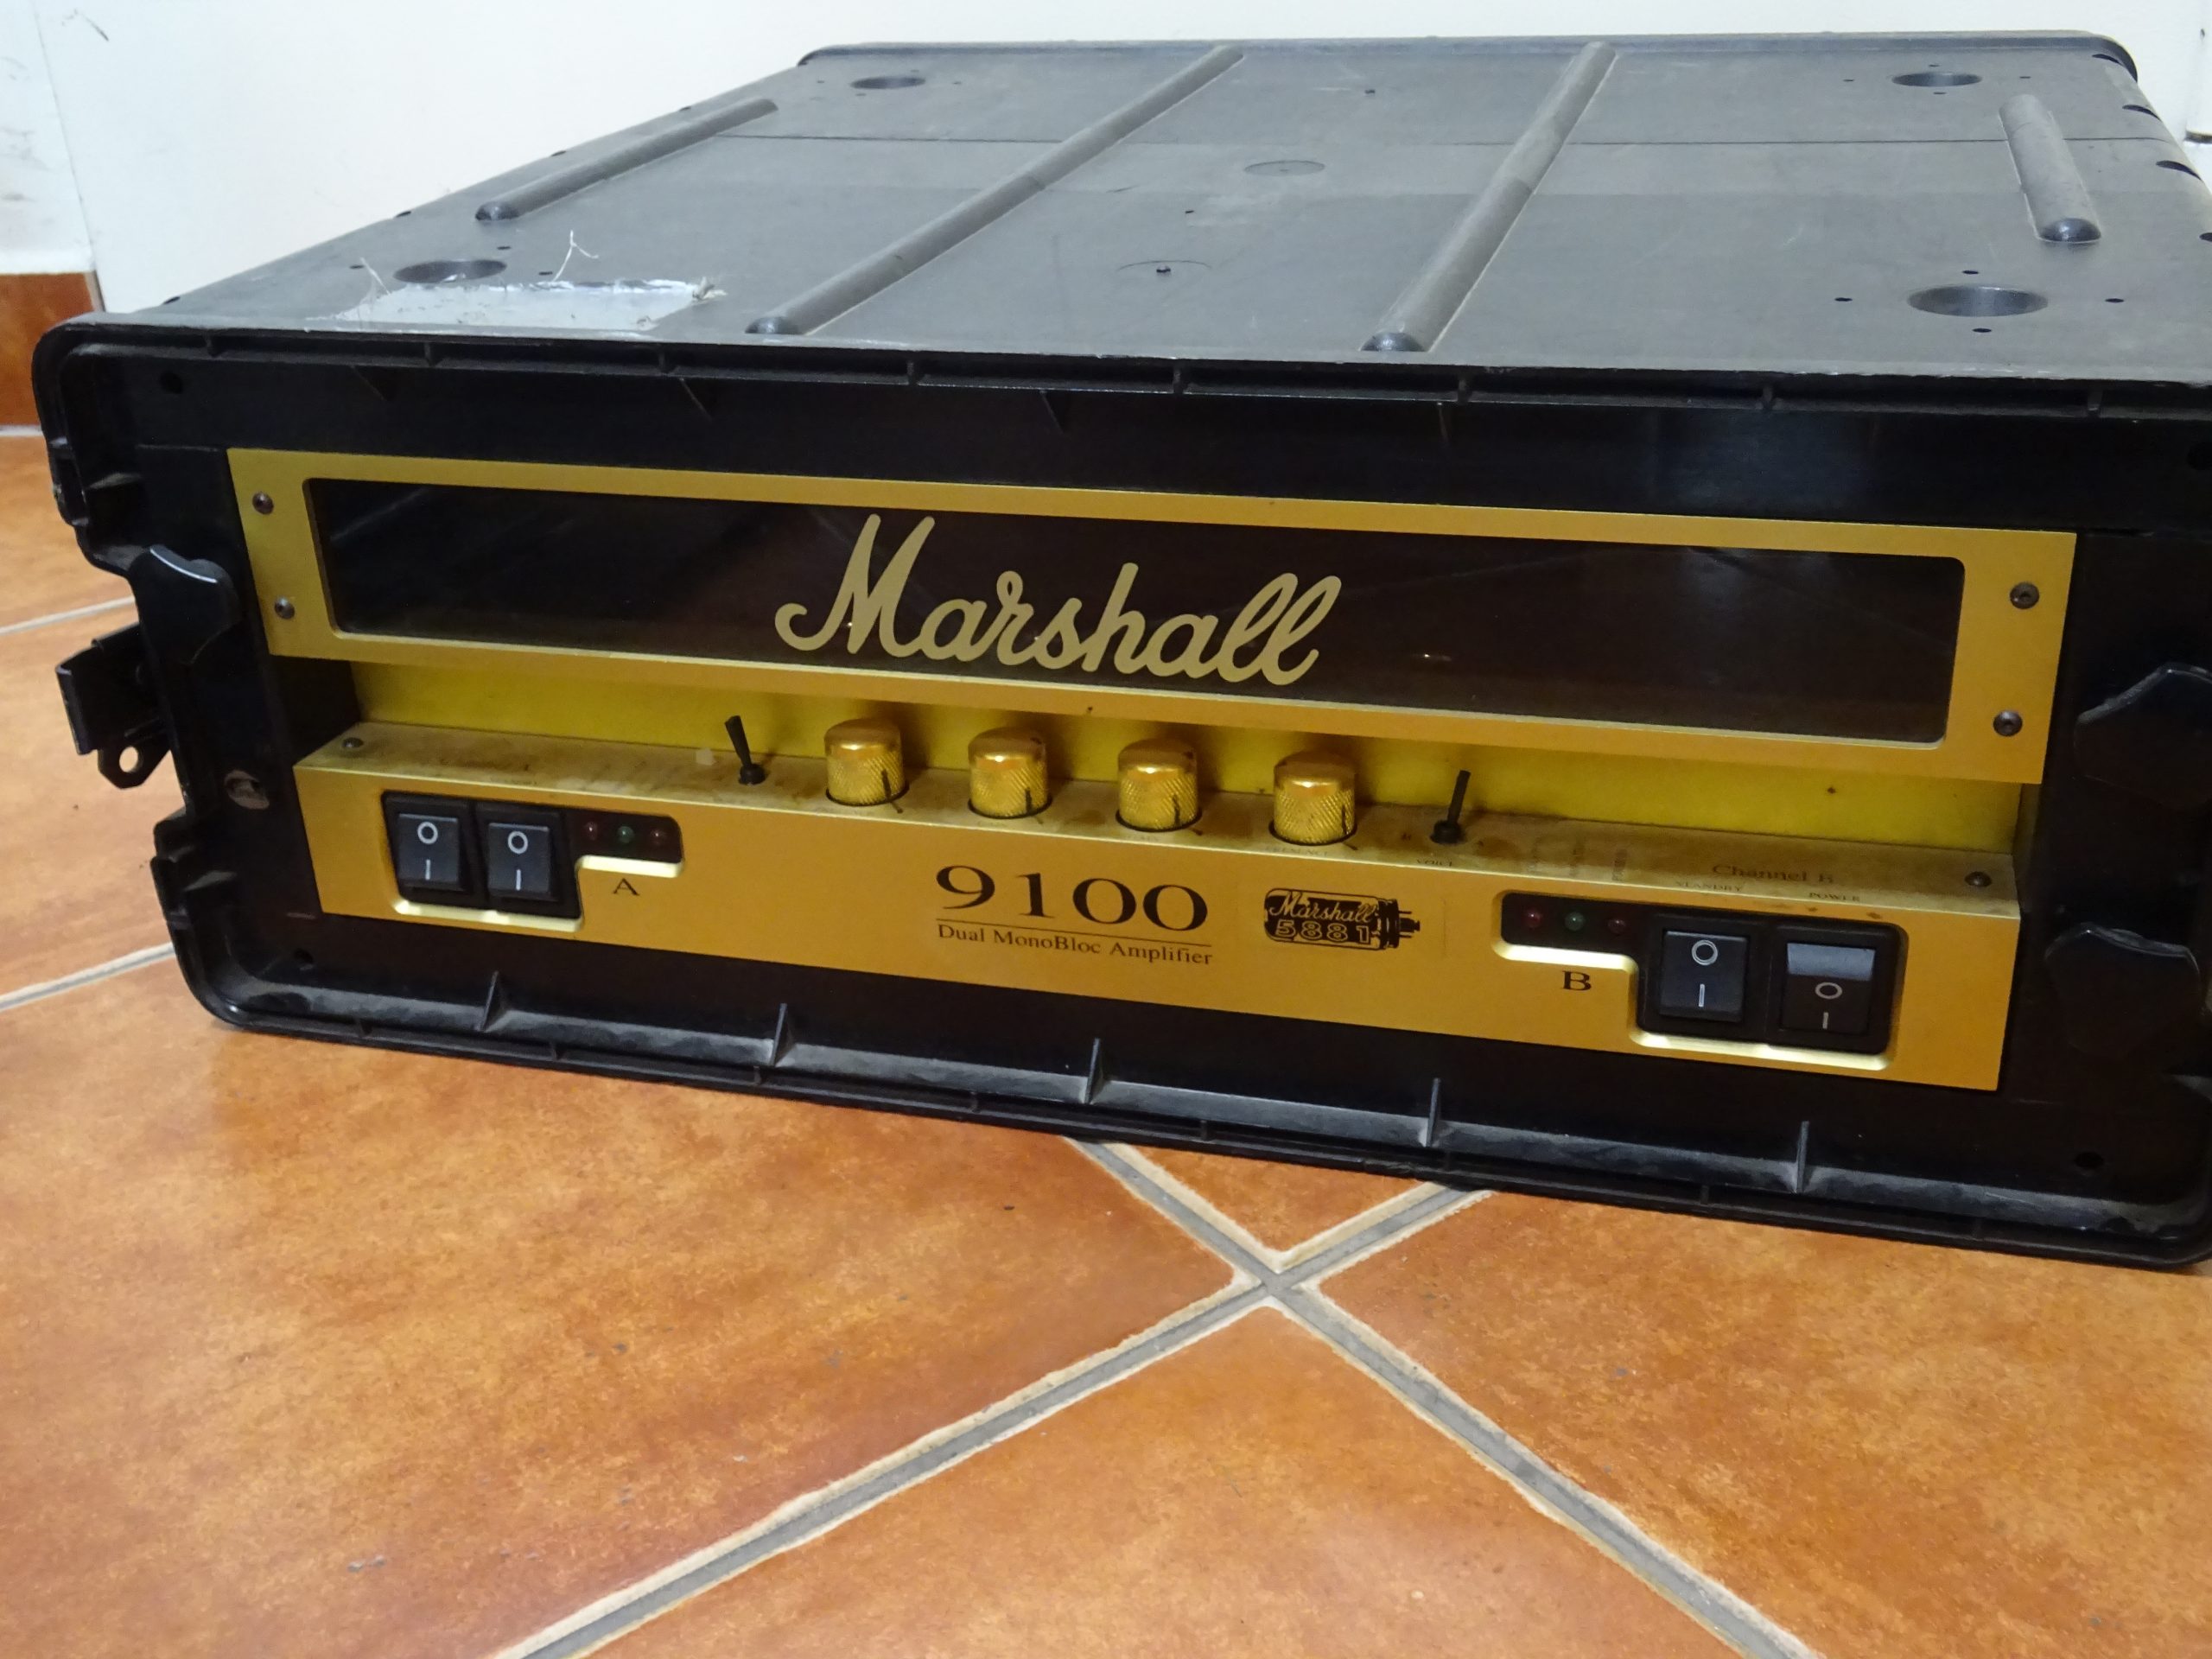 Marshall 9100 csöves erősítő -kofferben, kiemelt kép